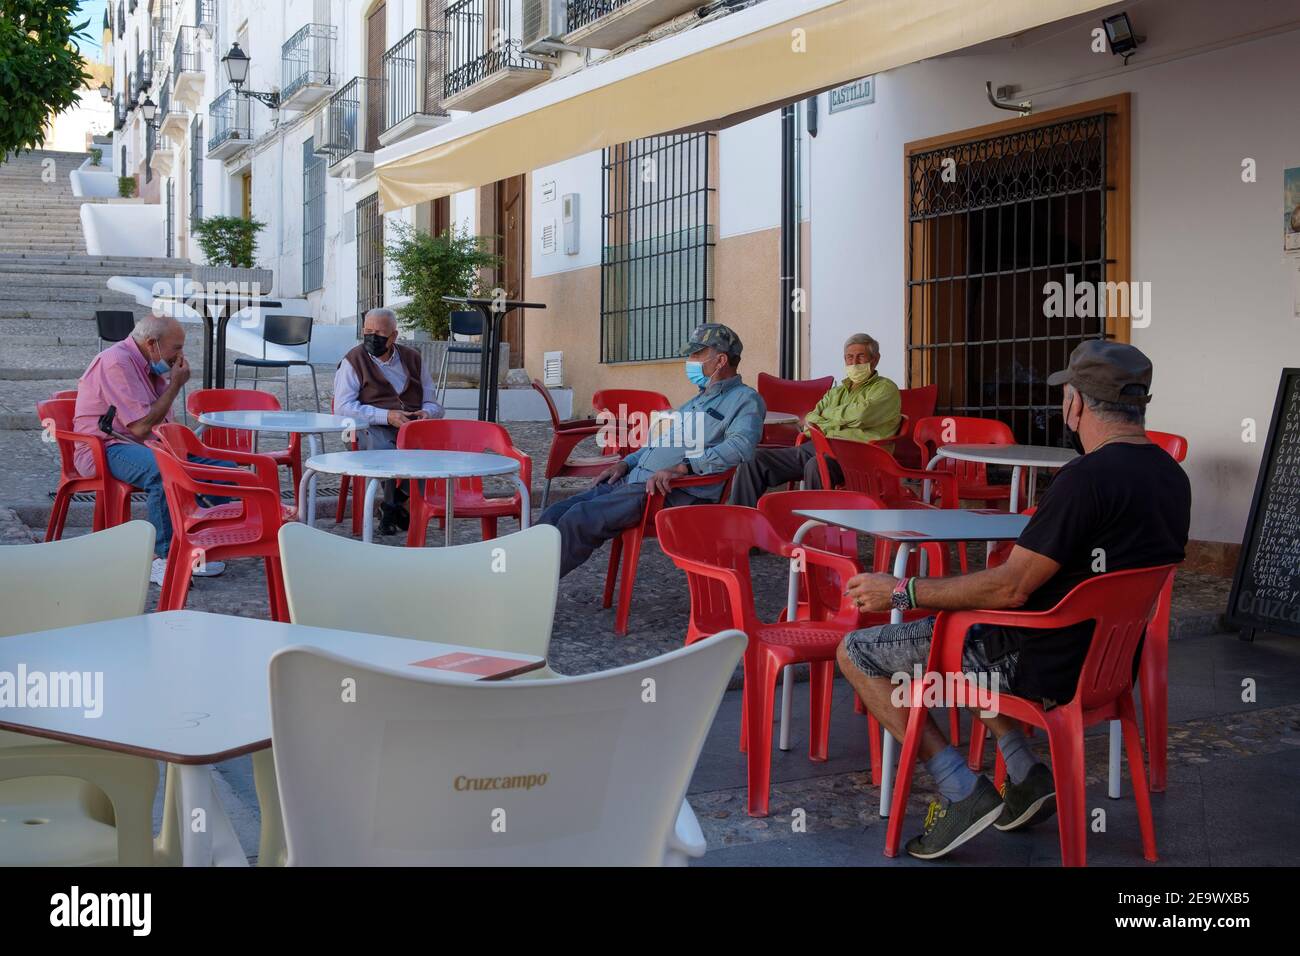 Anziani maschi residenti in maschera, seduti fuori dal bar del villaggio chiuso durante la pandemia di Covid nell'estate 2020. Carcabuey, Andalusia, Spagna Foto Stock